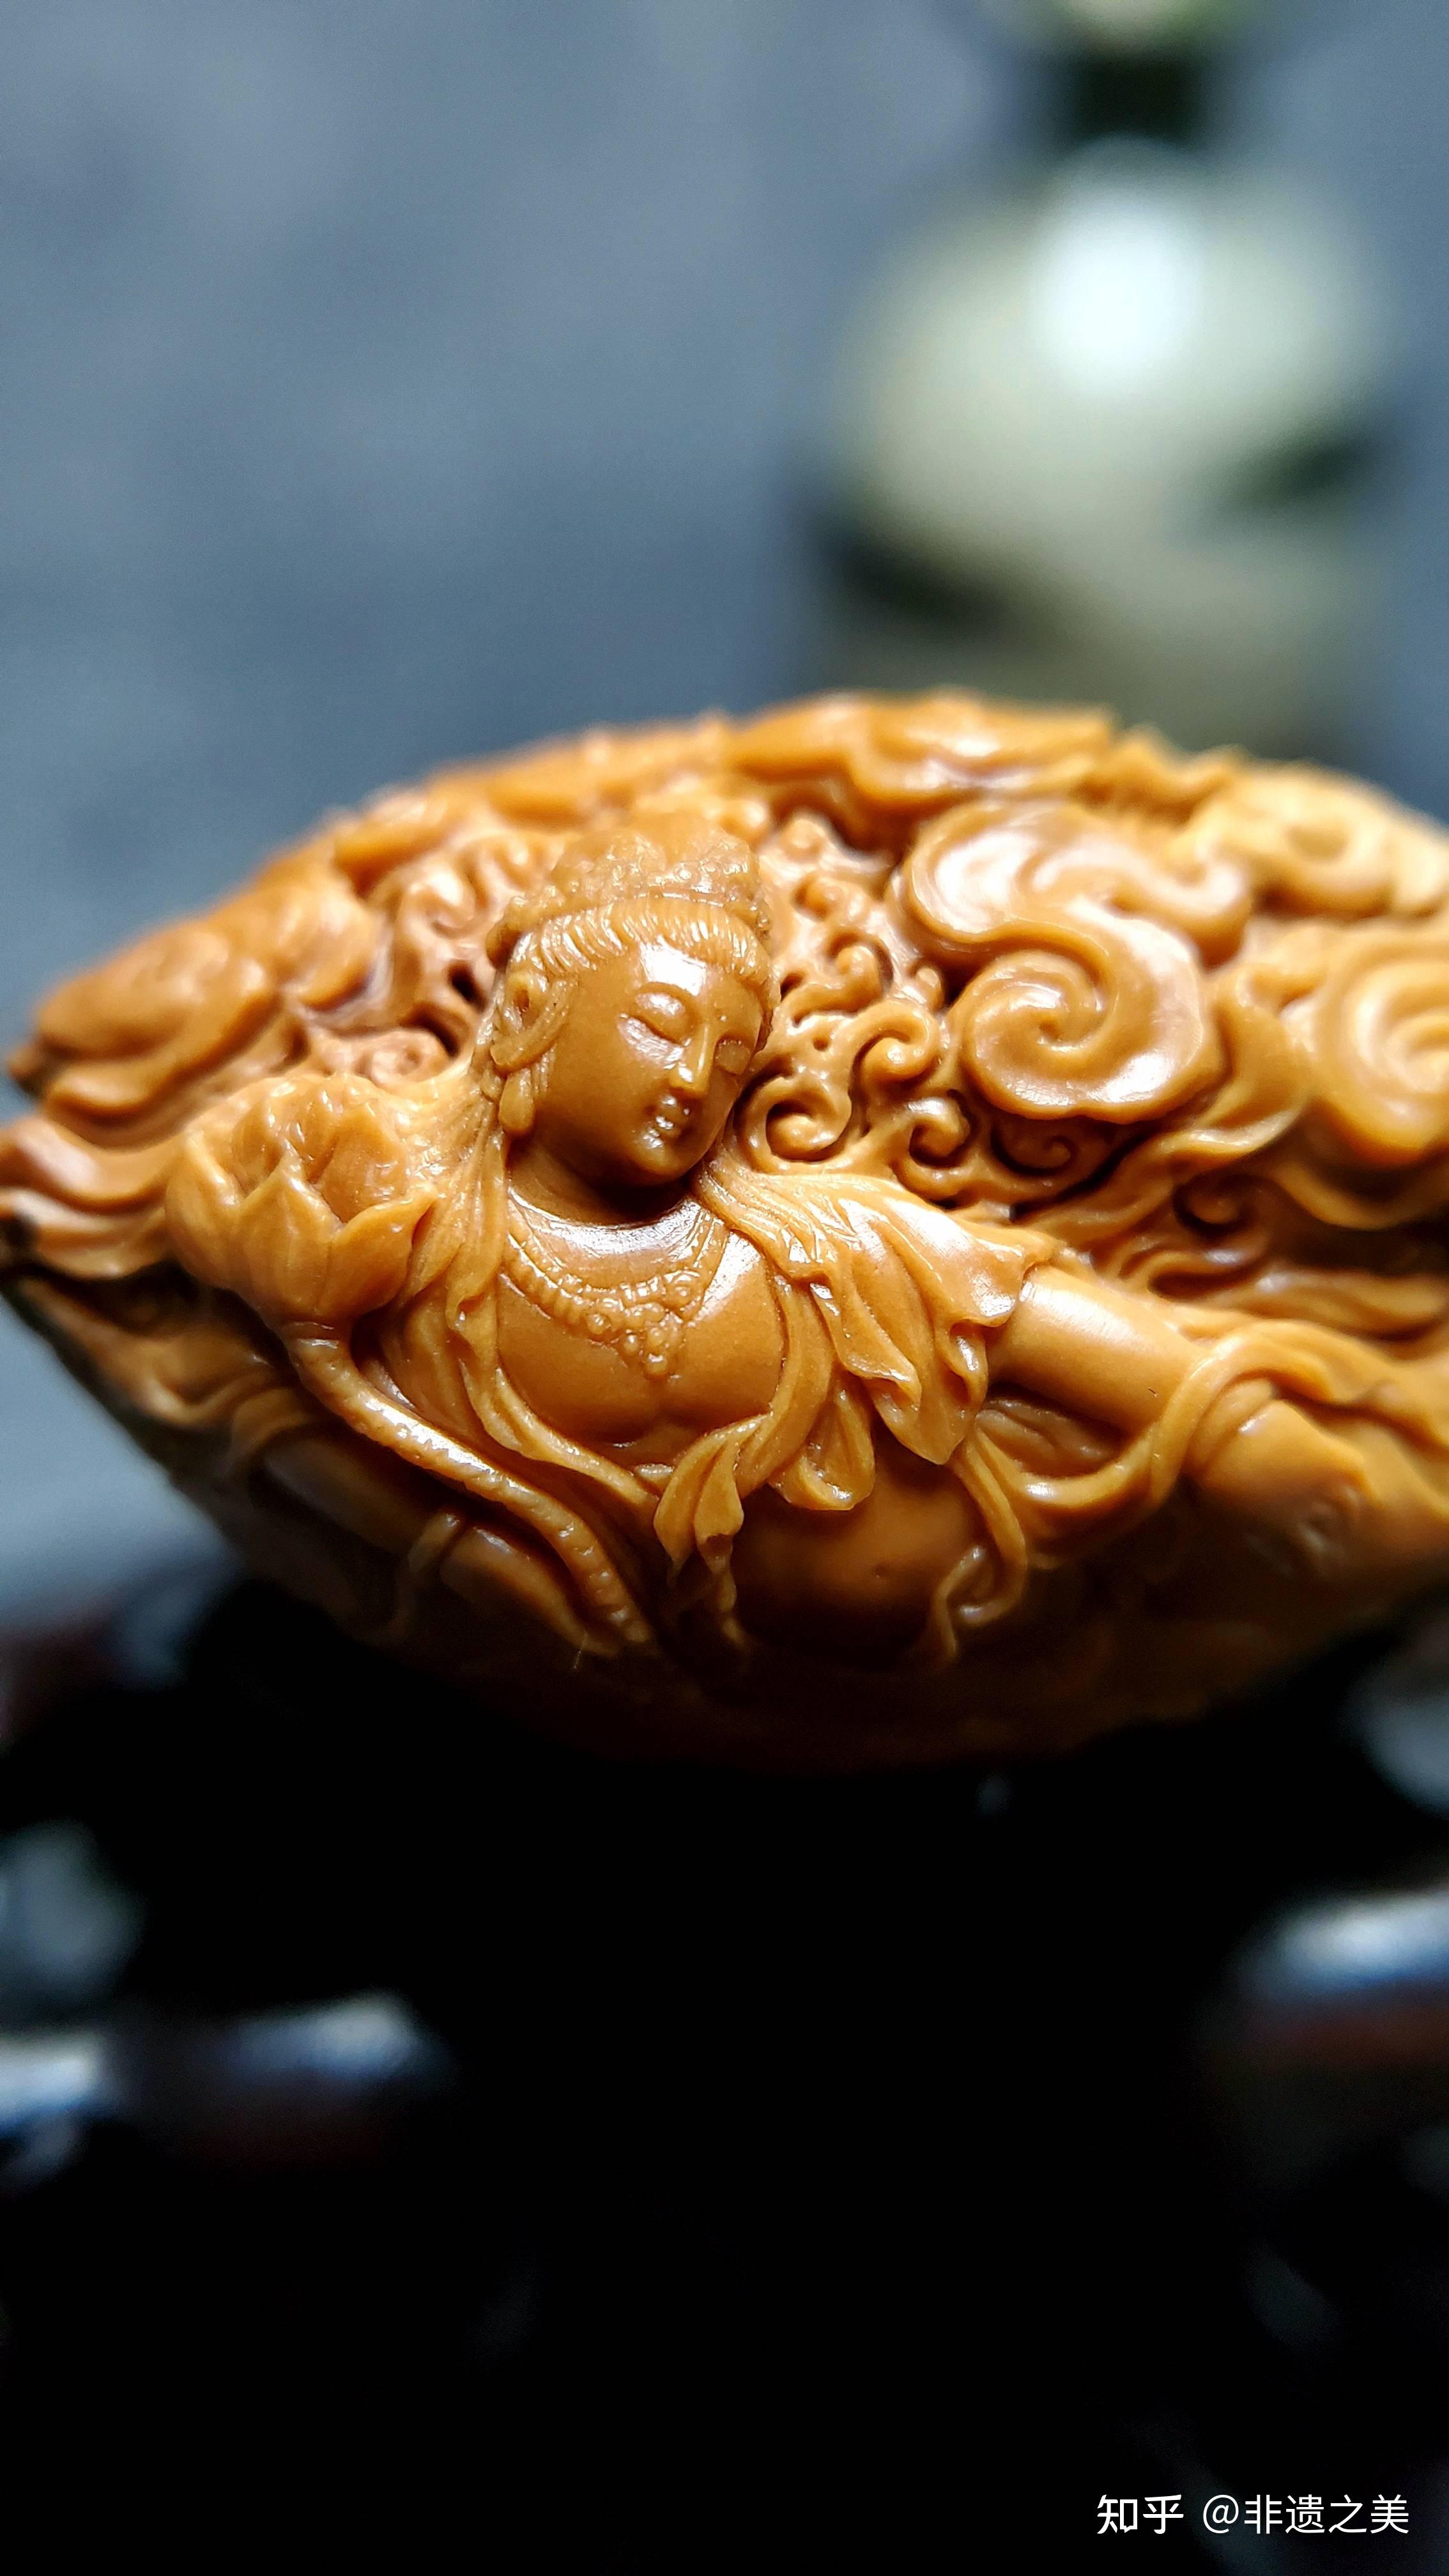 光福核雕,非遗之美——江苏省工艺美术大师周建明的核雕之美 